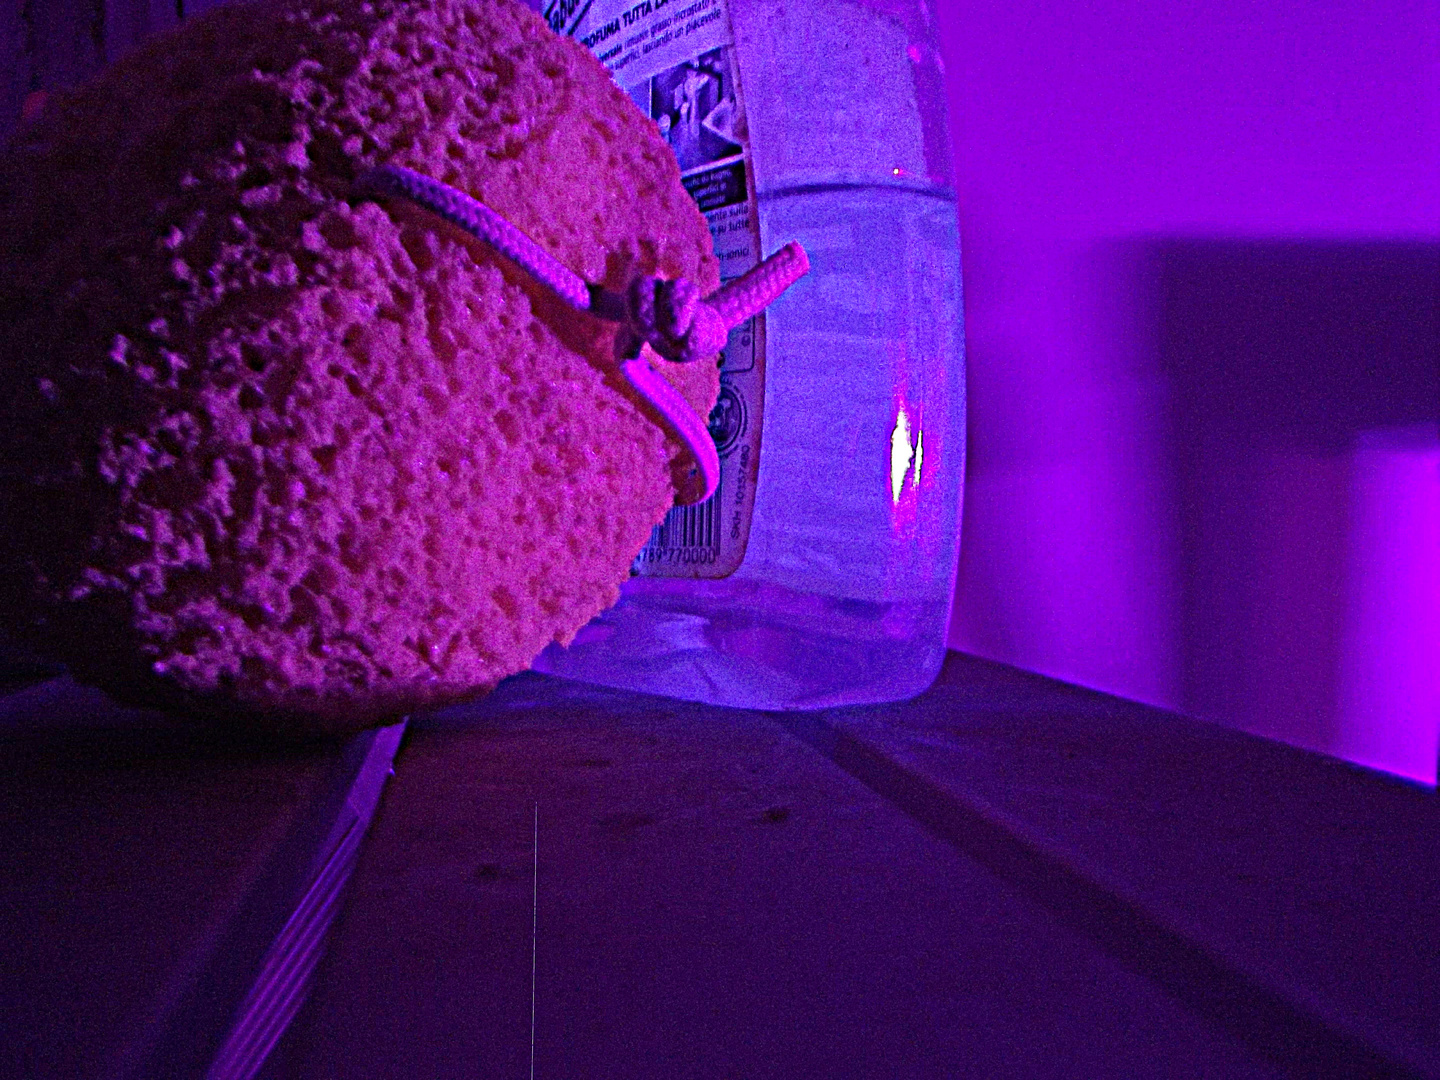 UV sponger and bottle